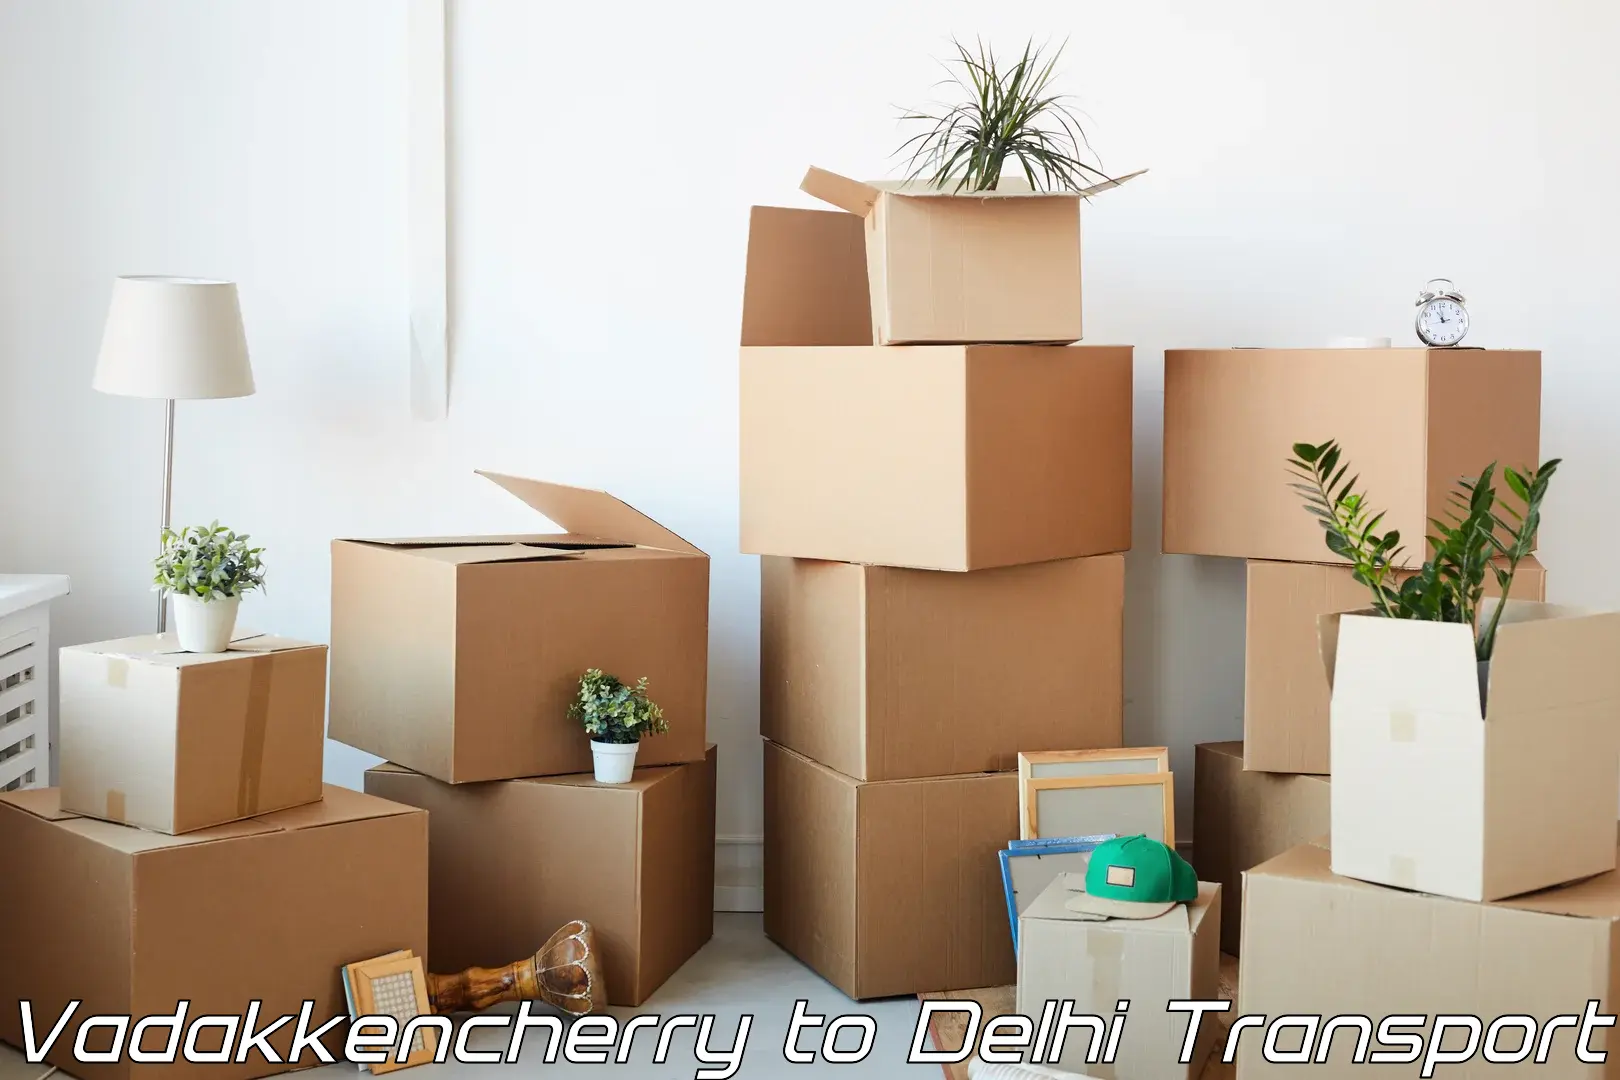 Scooty parcel Vadakkencherry to Delhi